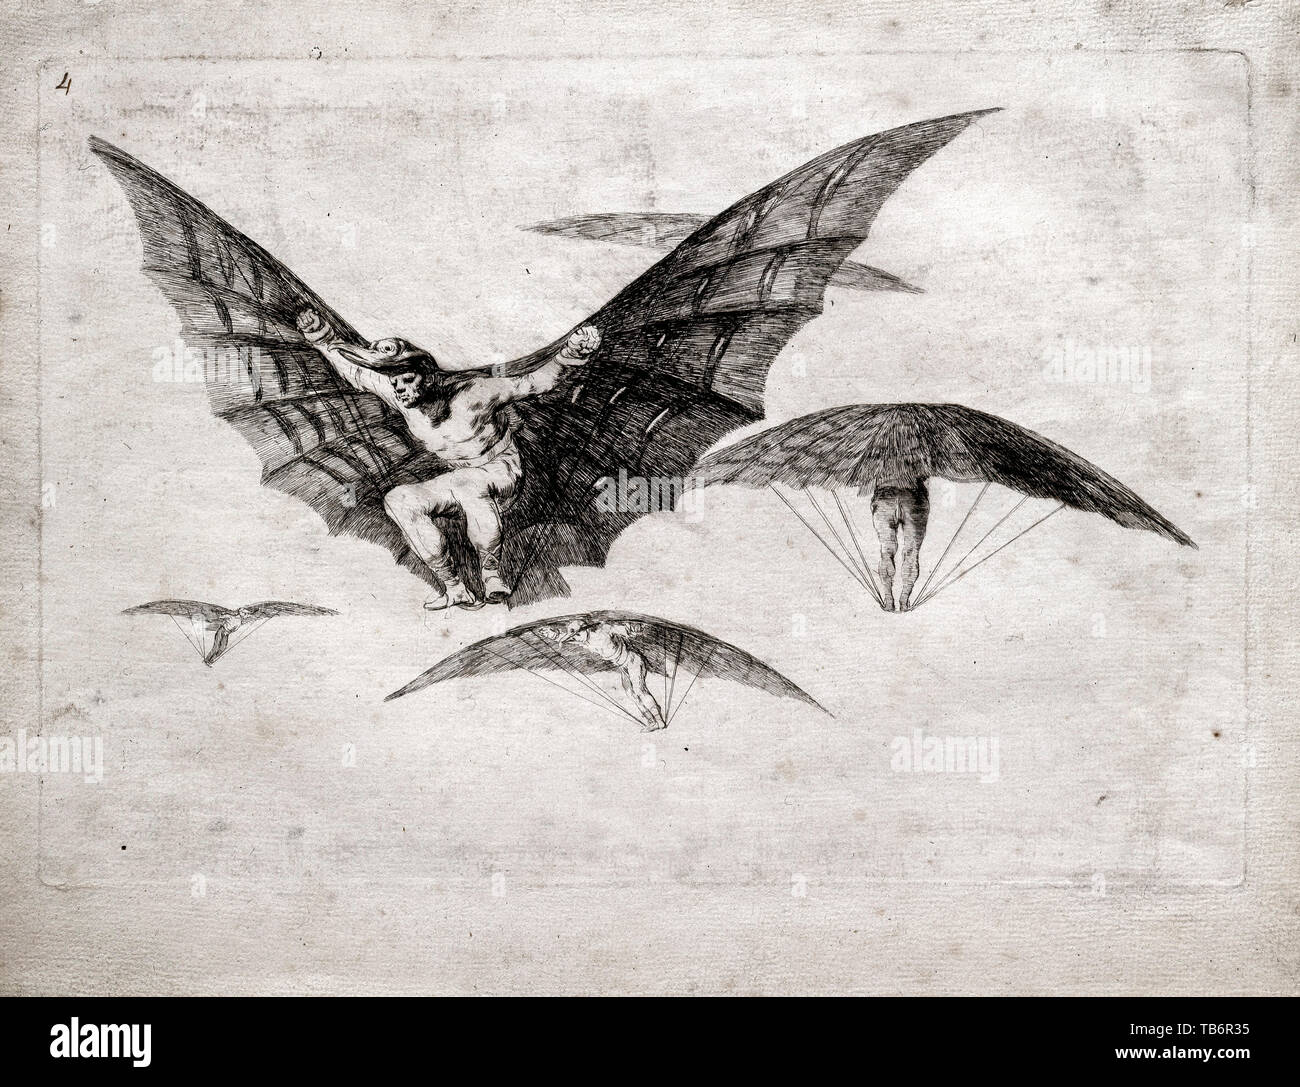 Francisco de Goya, una forma de volar, aguafuerte, circa 1815 Foto de stock